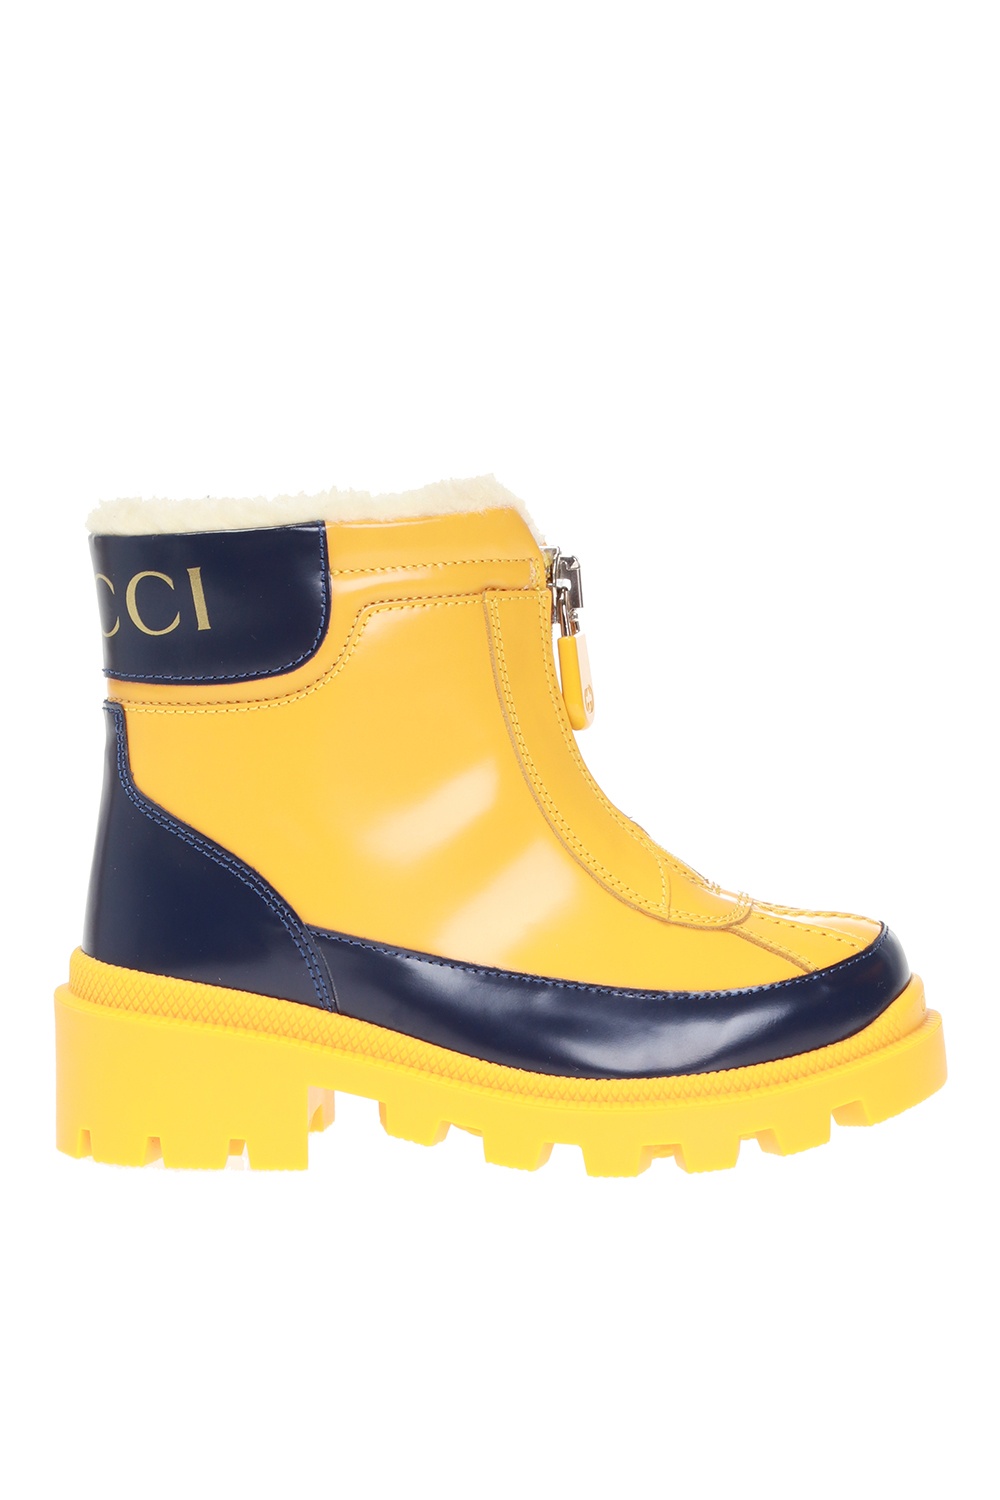 yellow gucci rain boots